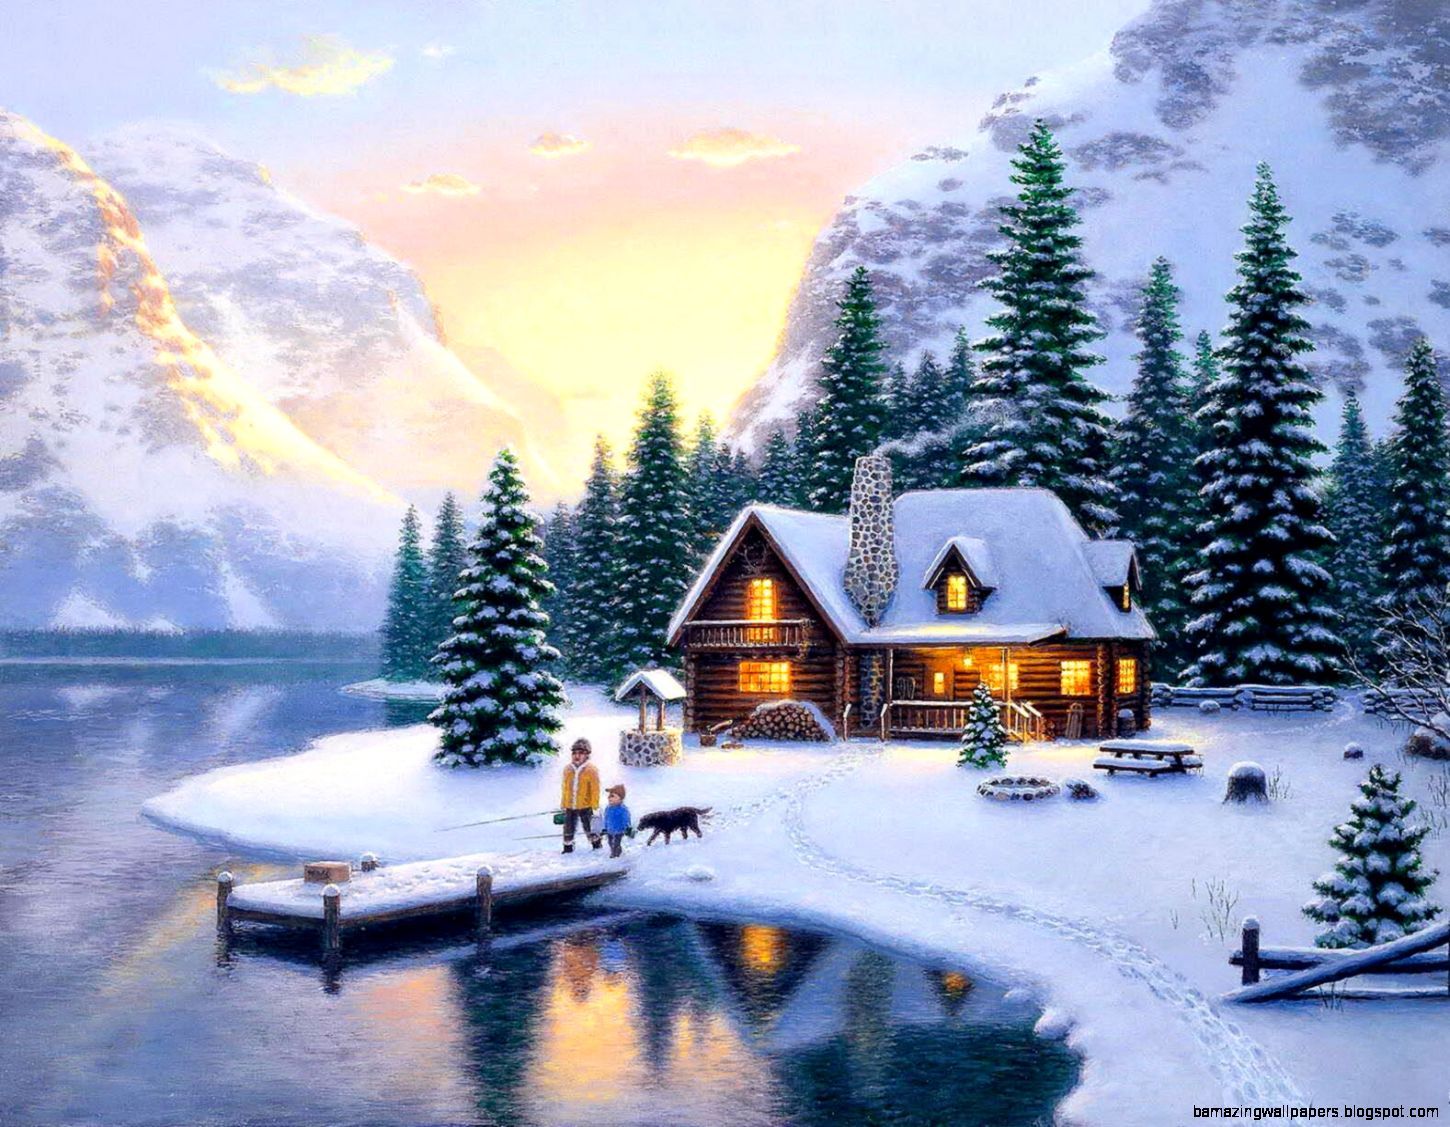 Snowy Mountain Cabin Wallpaper